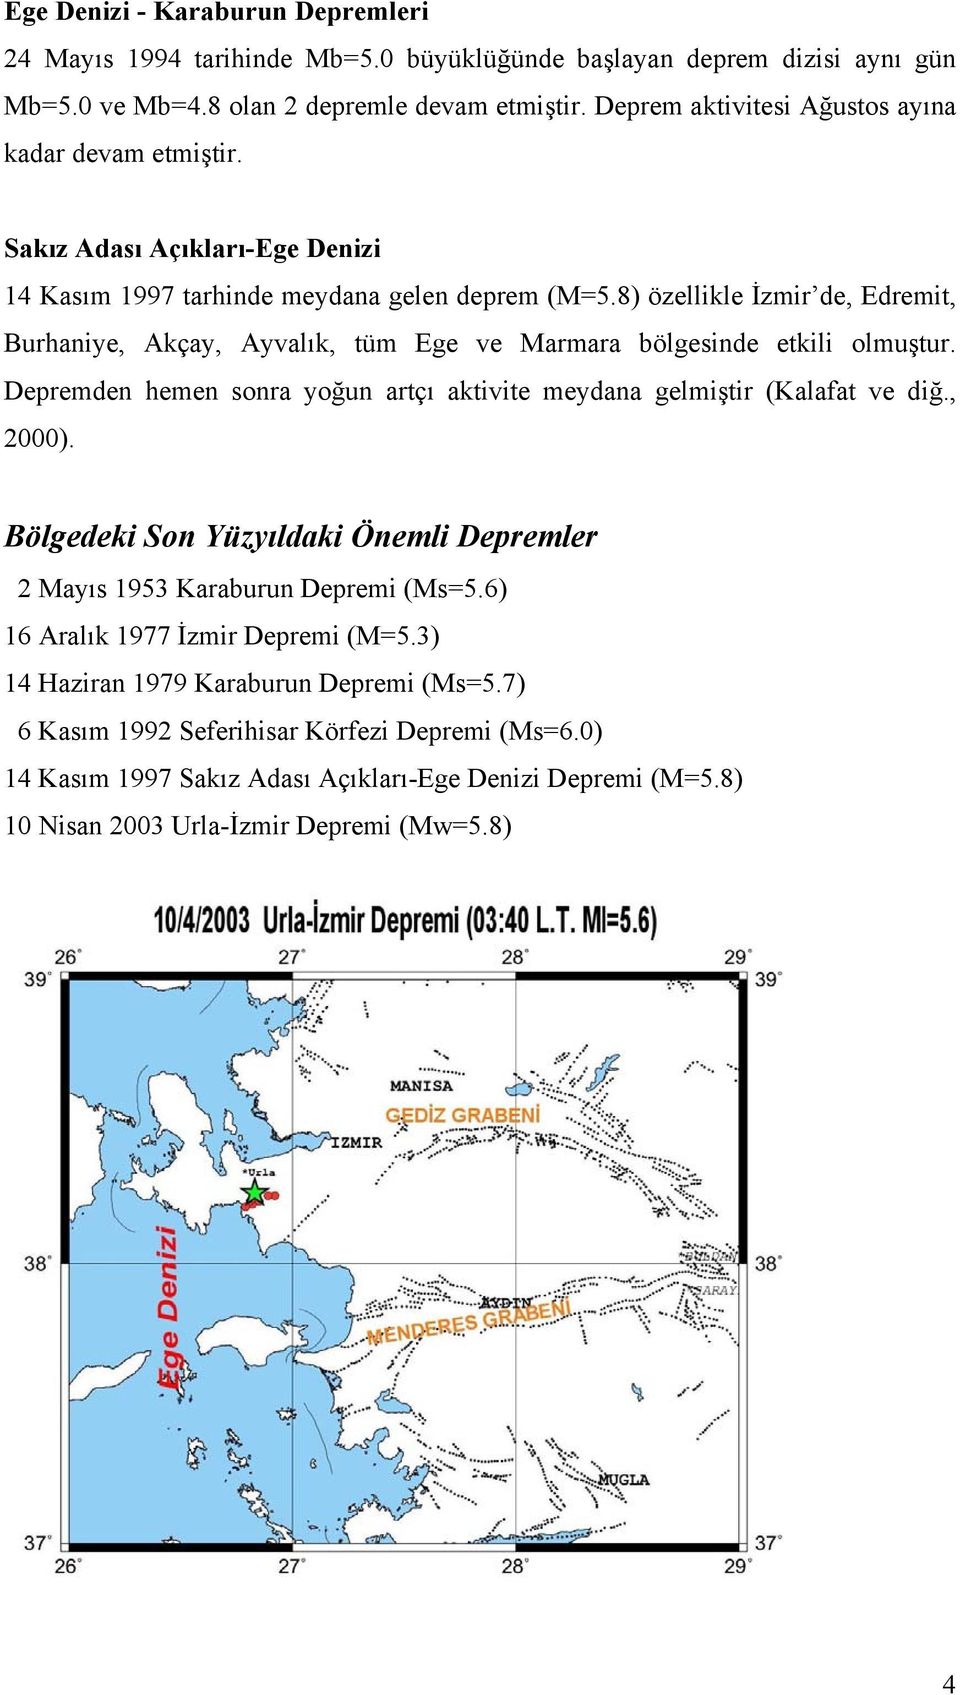 8) özellikle İzmir de, Edremit, Burhaniye, Akçay, Ayvalık, tüm Ege ve Marmara bölgesinde etkili olmuştur. Depremden hemen sonra yoğun artçı aktivite meydana gelmiştir (Kalafat ve diğ., 2000).